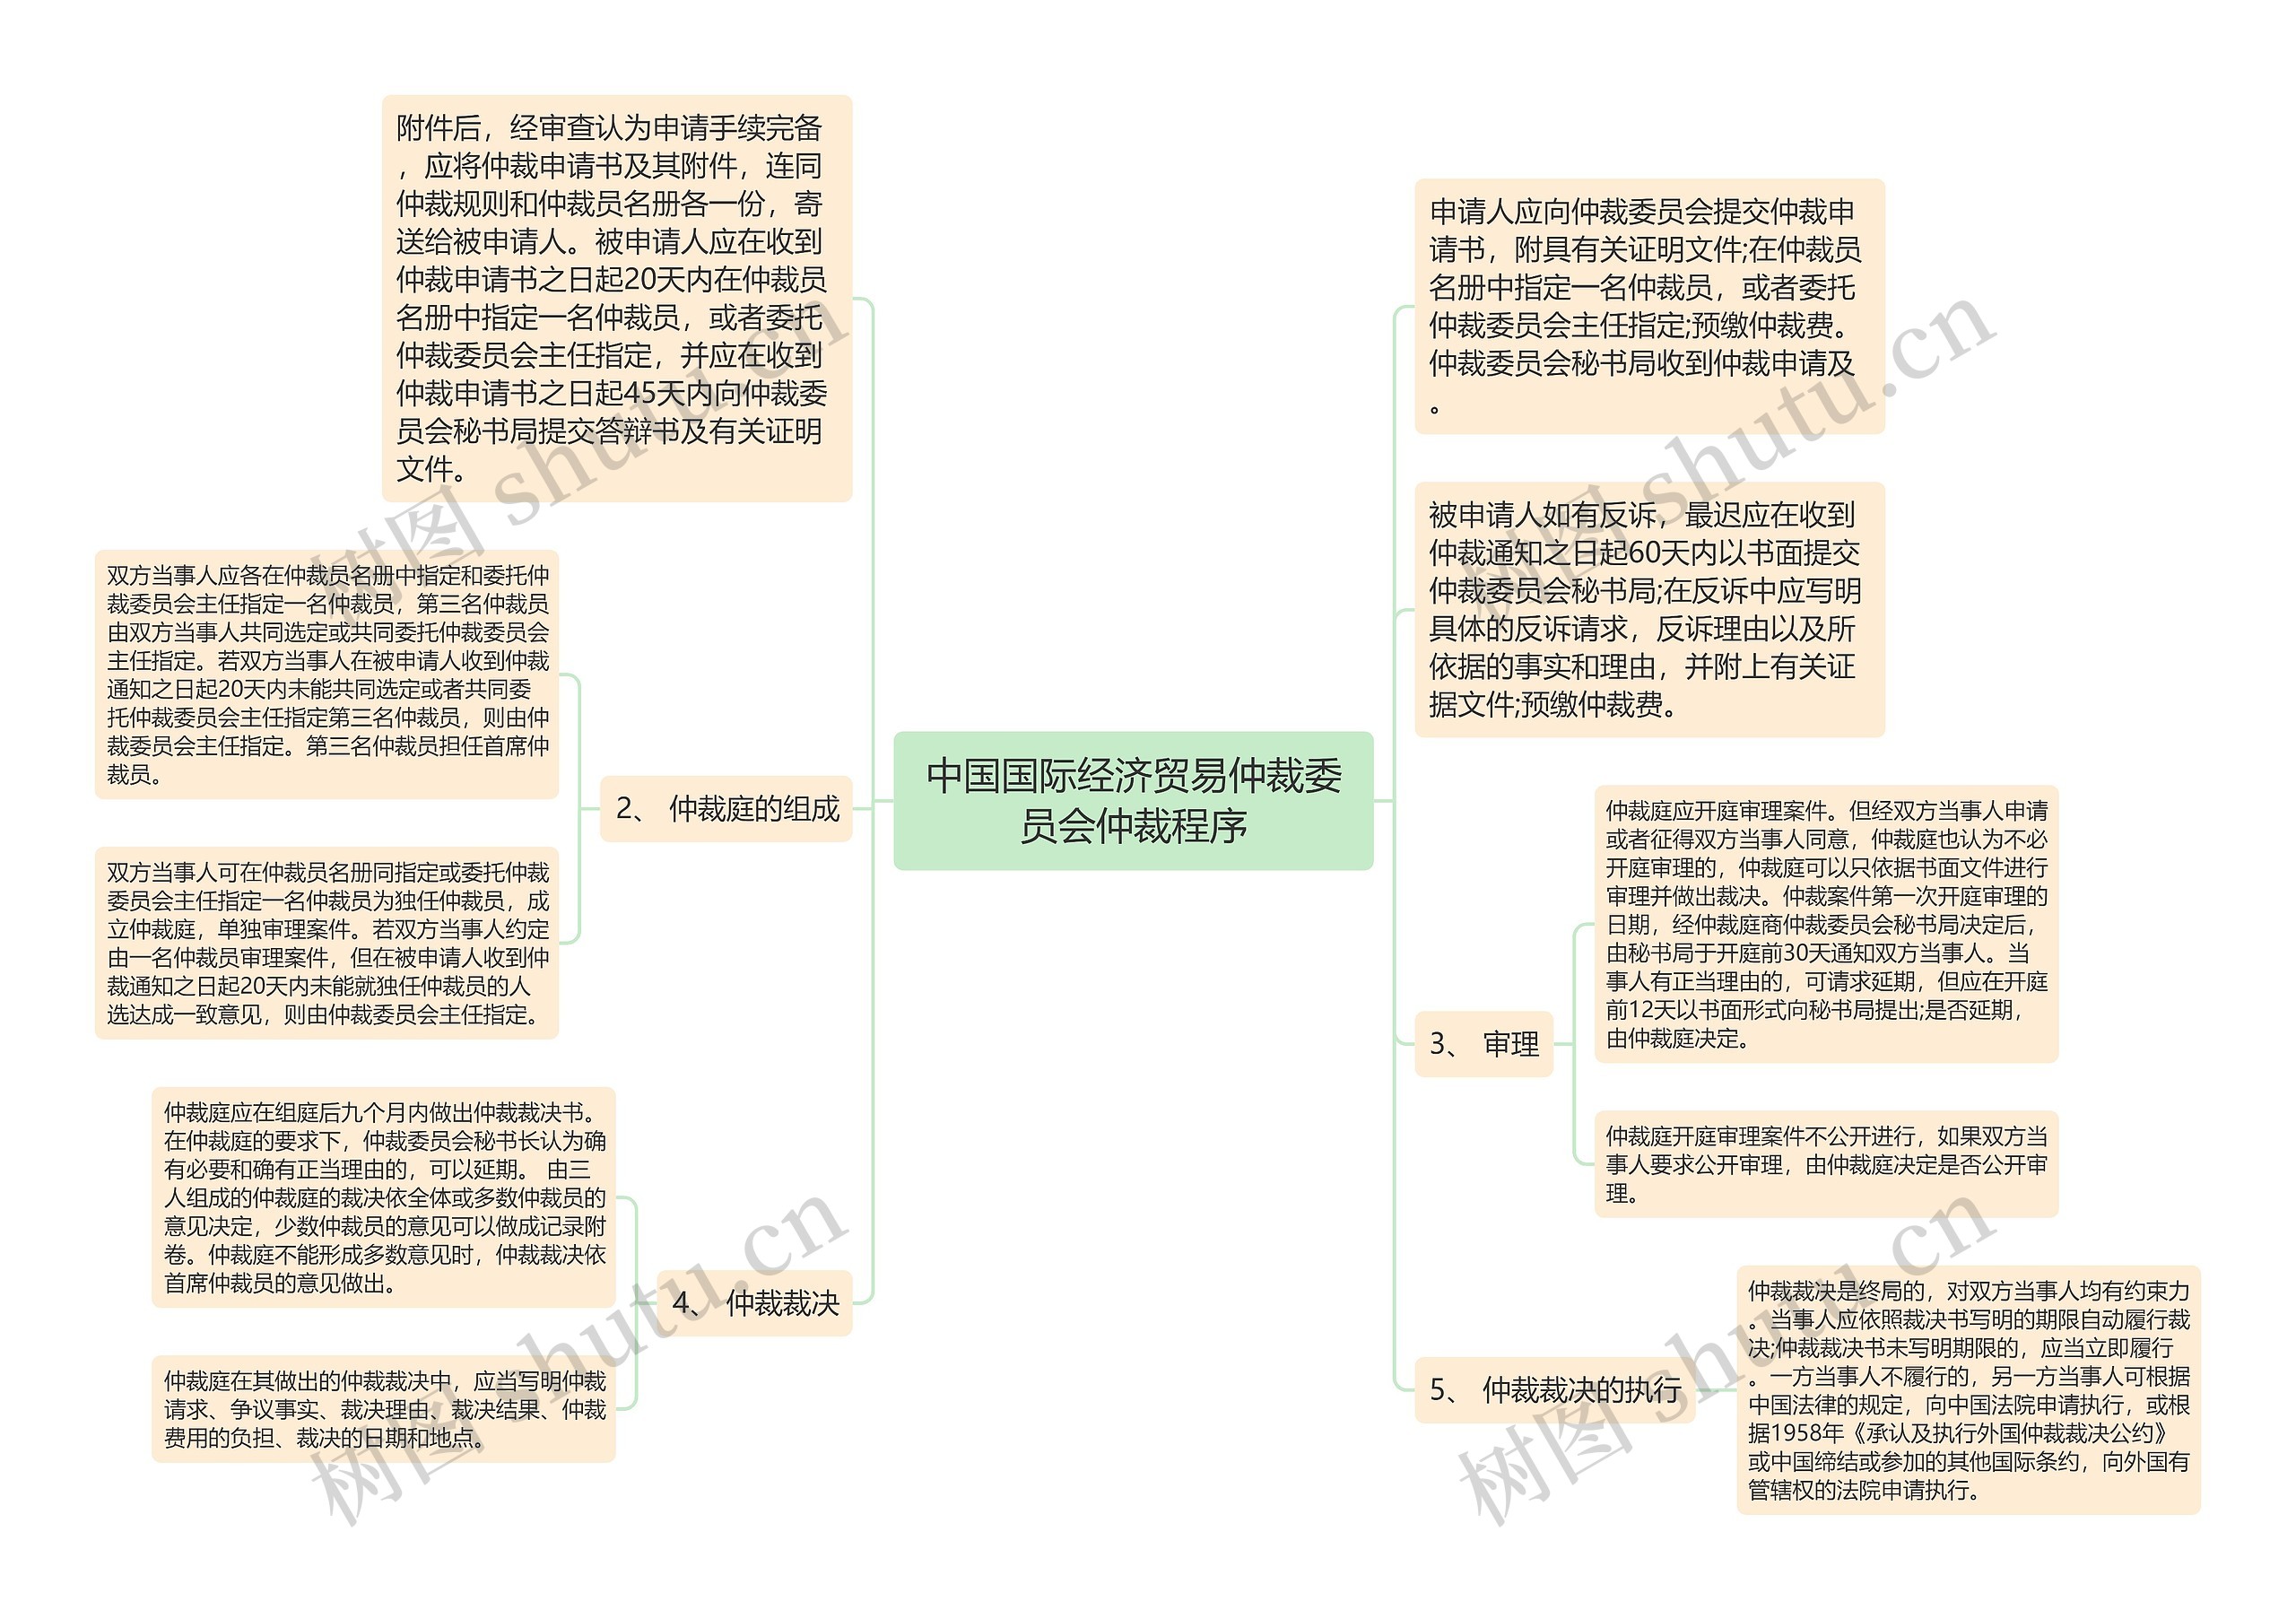 中国国际经济贸易仲裁委员会仲裁程序思维导图